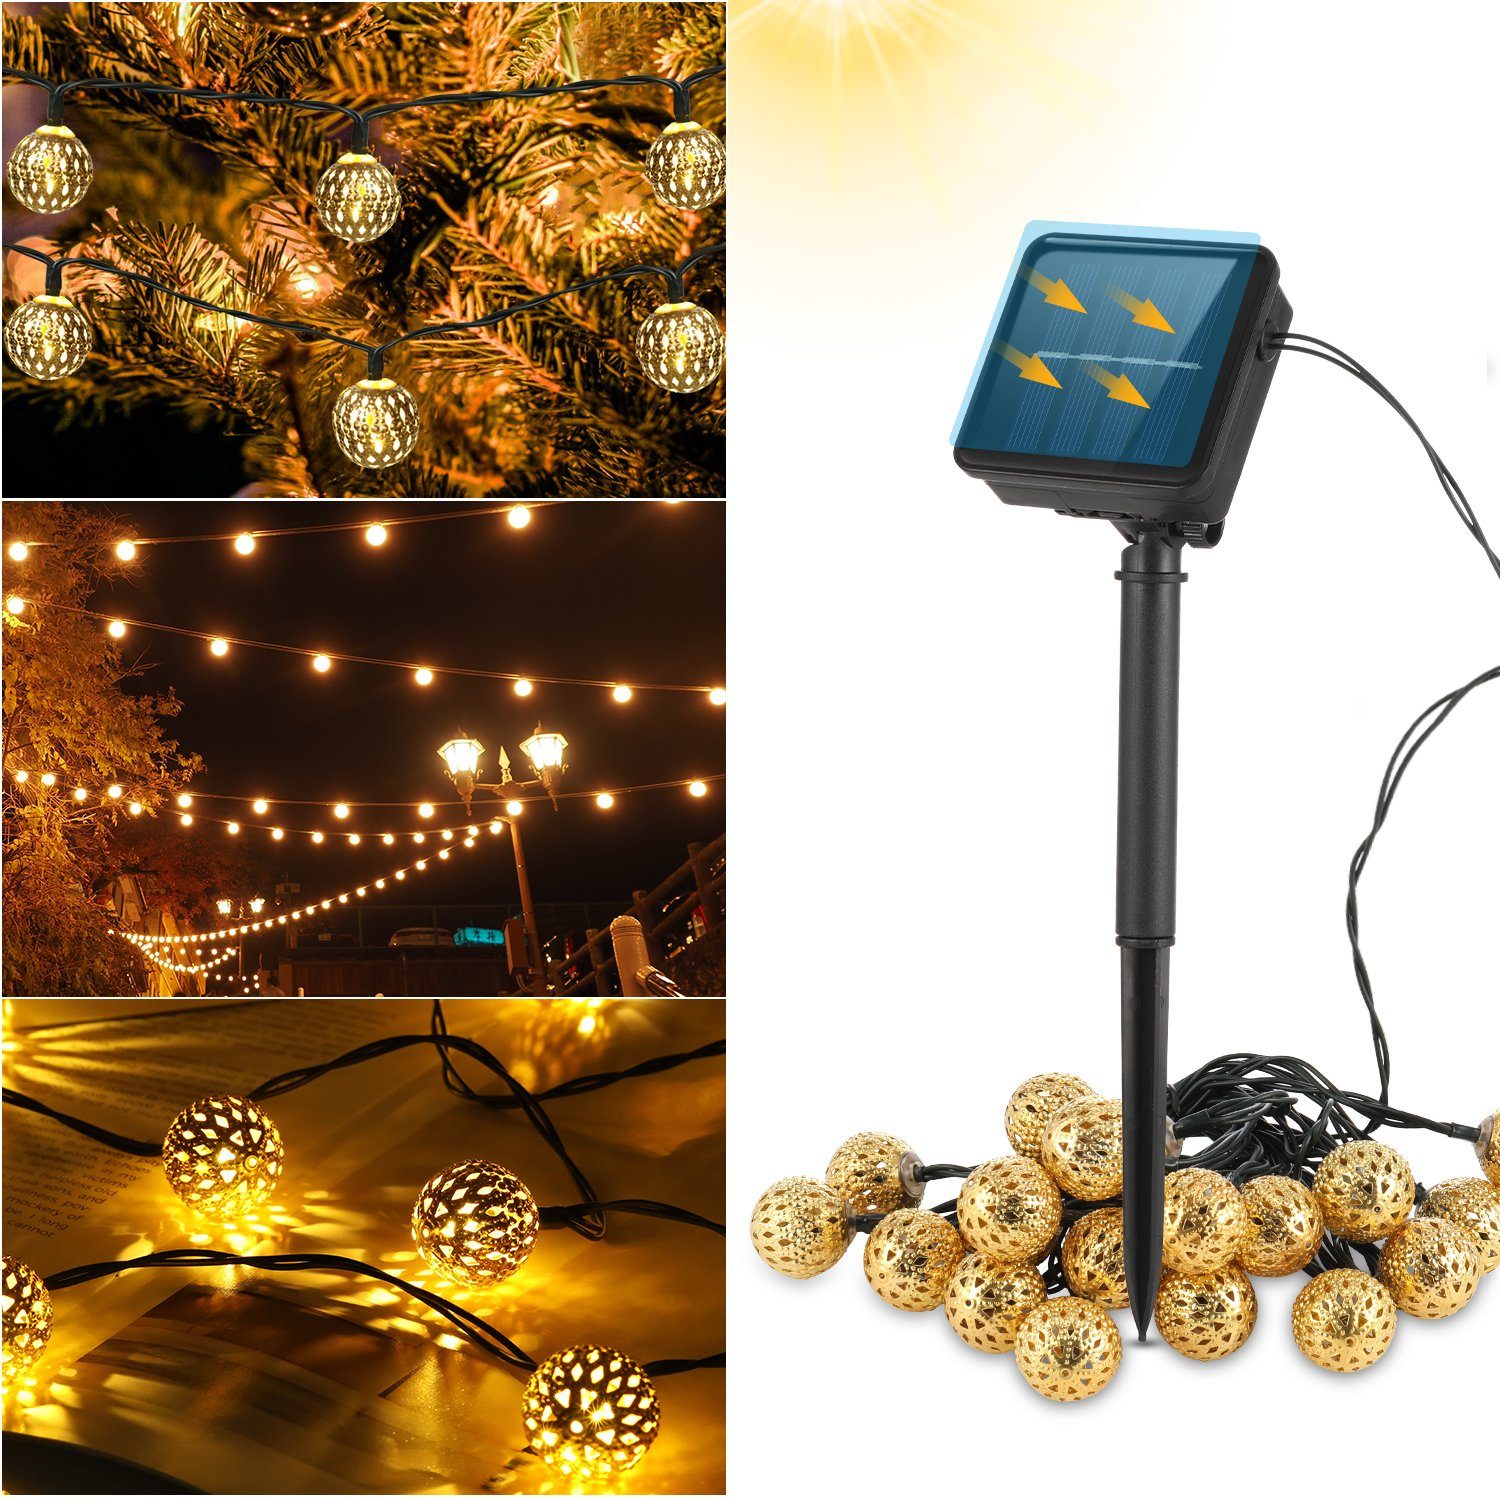 LETGOSPT LED-Lichterkette 5m LED Solar Lichterkette, 20 LEDs Lampe Kugel Solarleuchte mit 8 Modi, IP65 Wasserdicht Lichterkette Innen Außen Garten Weihnachten Deko